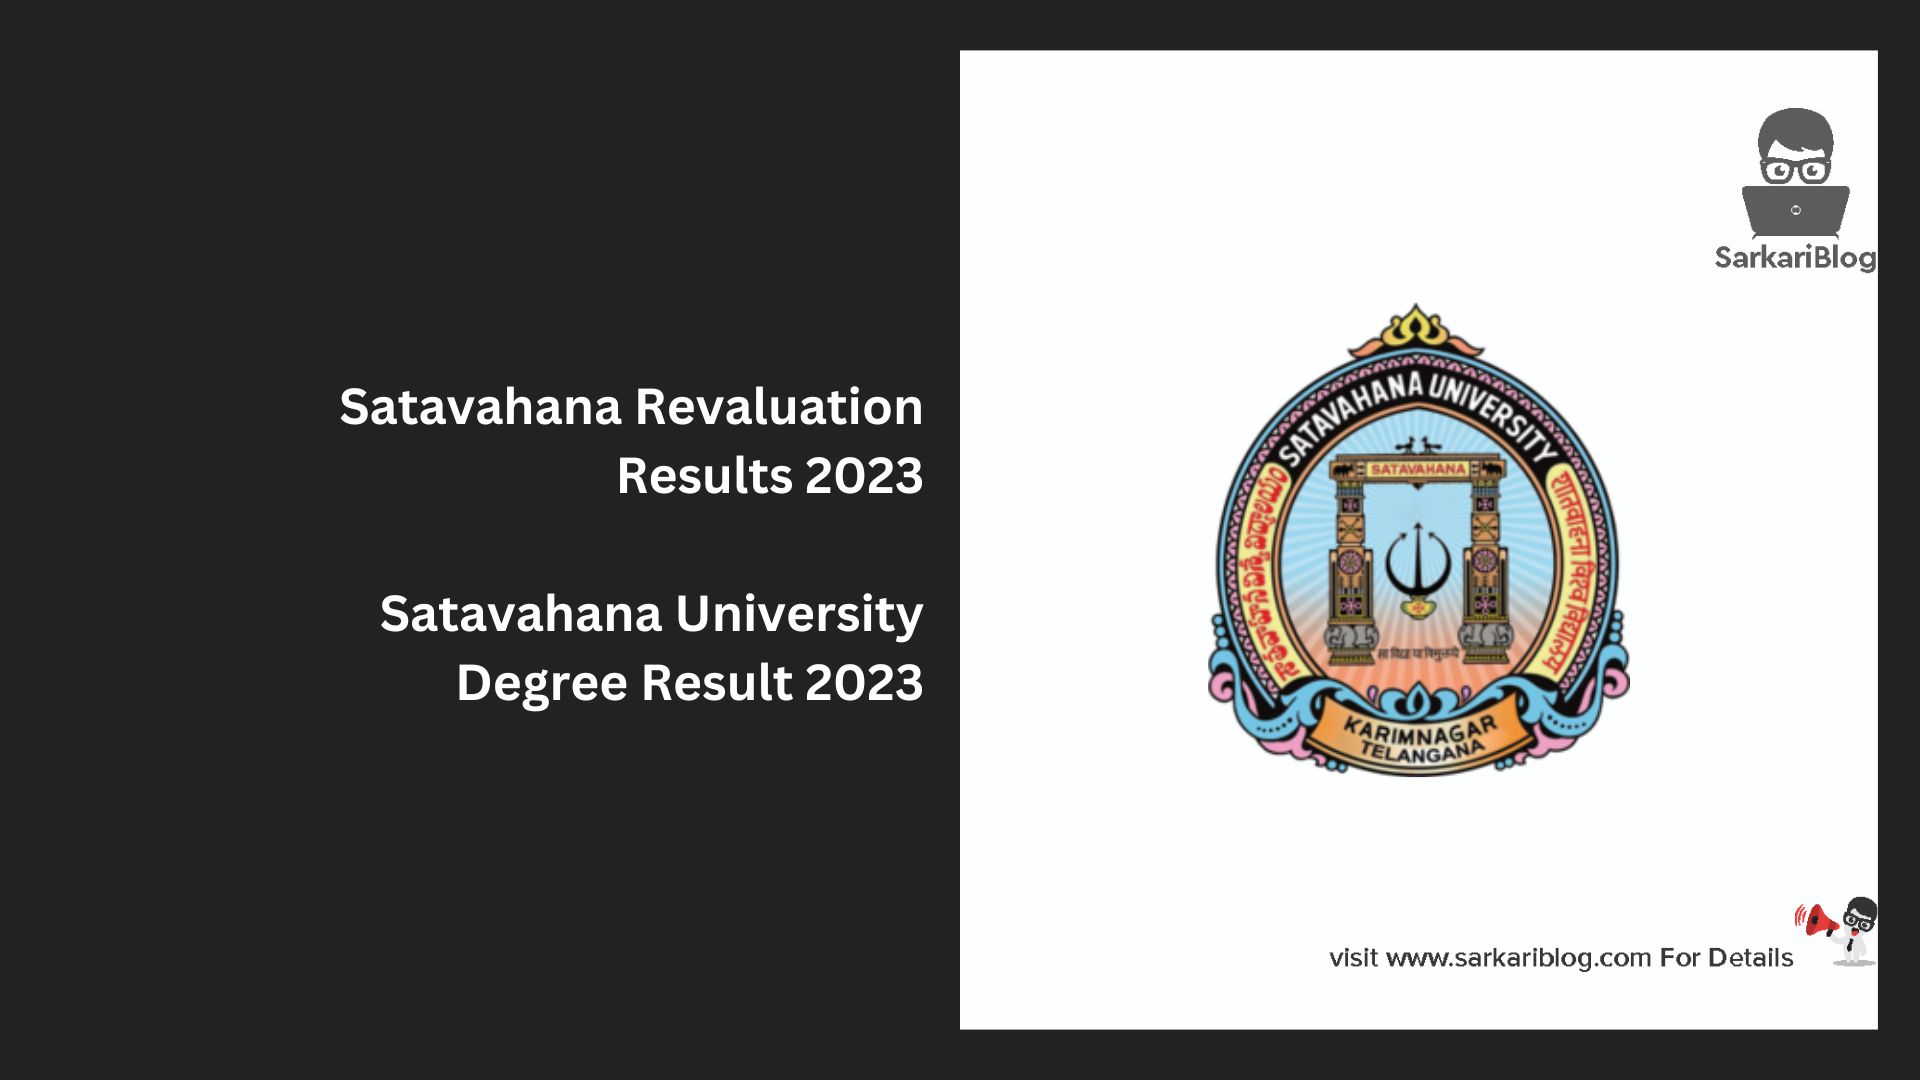 Satavahana Revaluation Results 2023